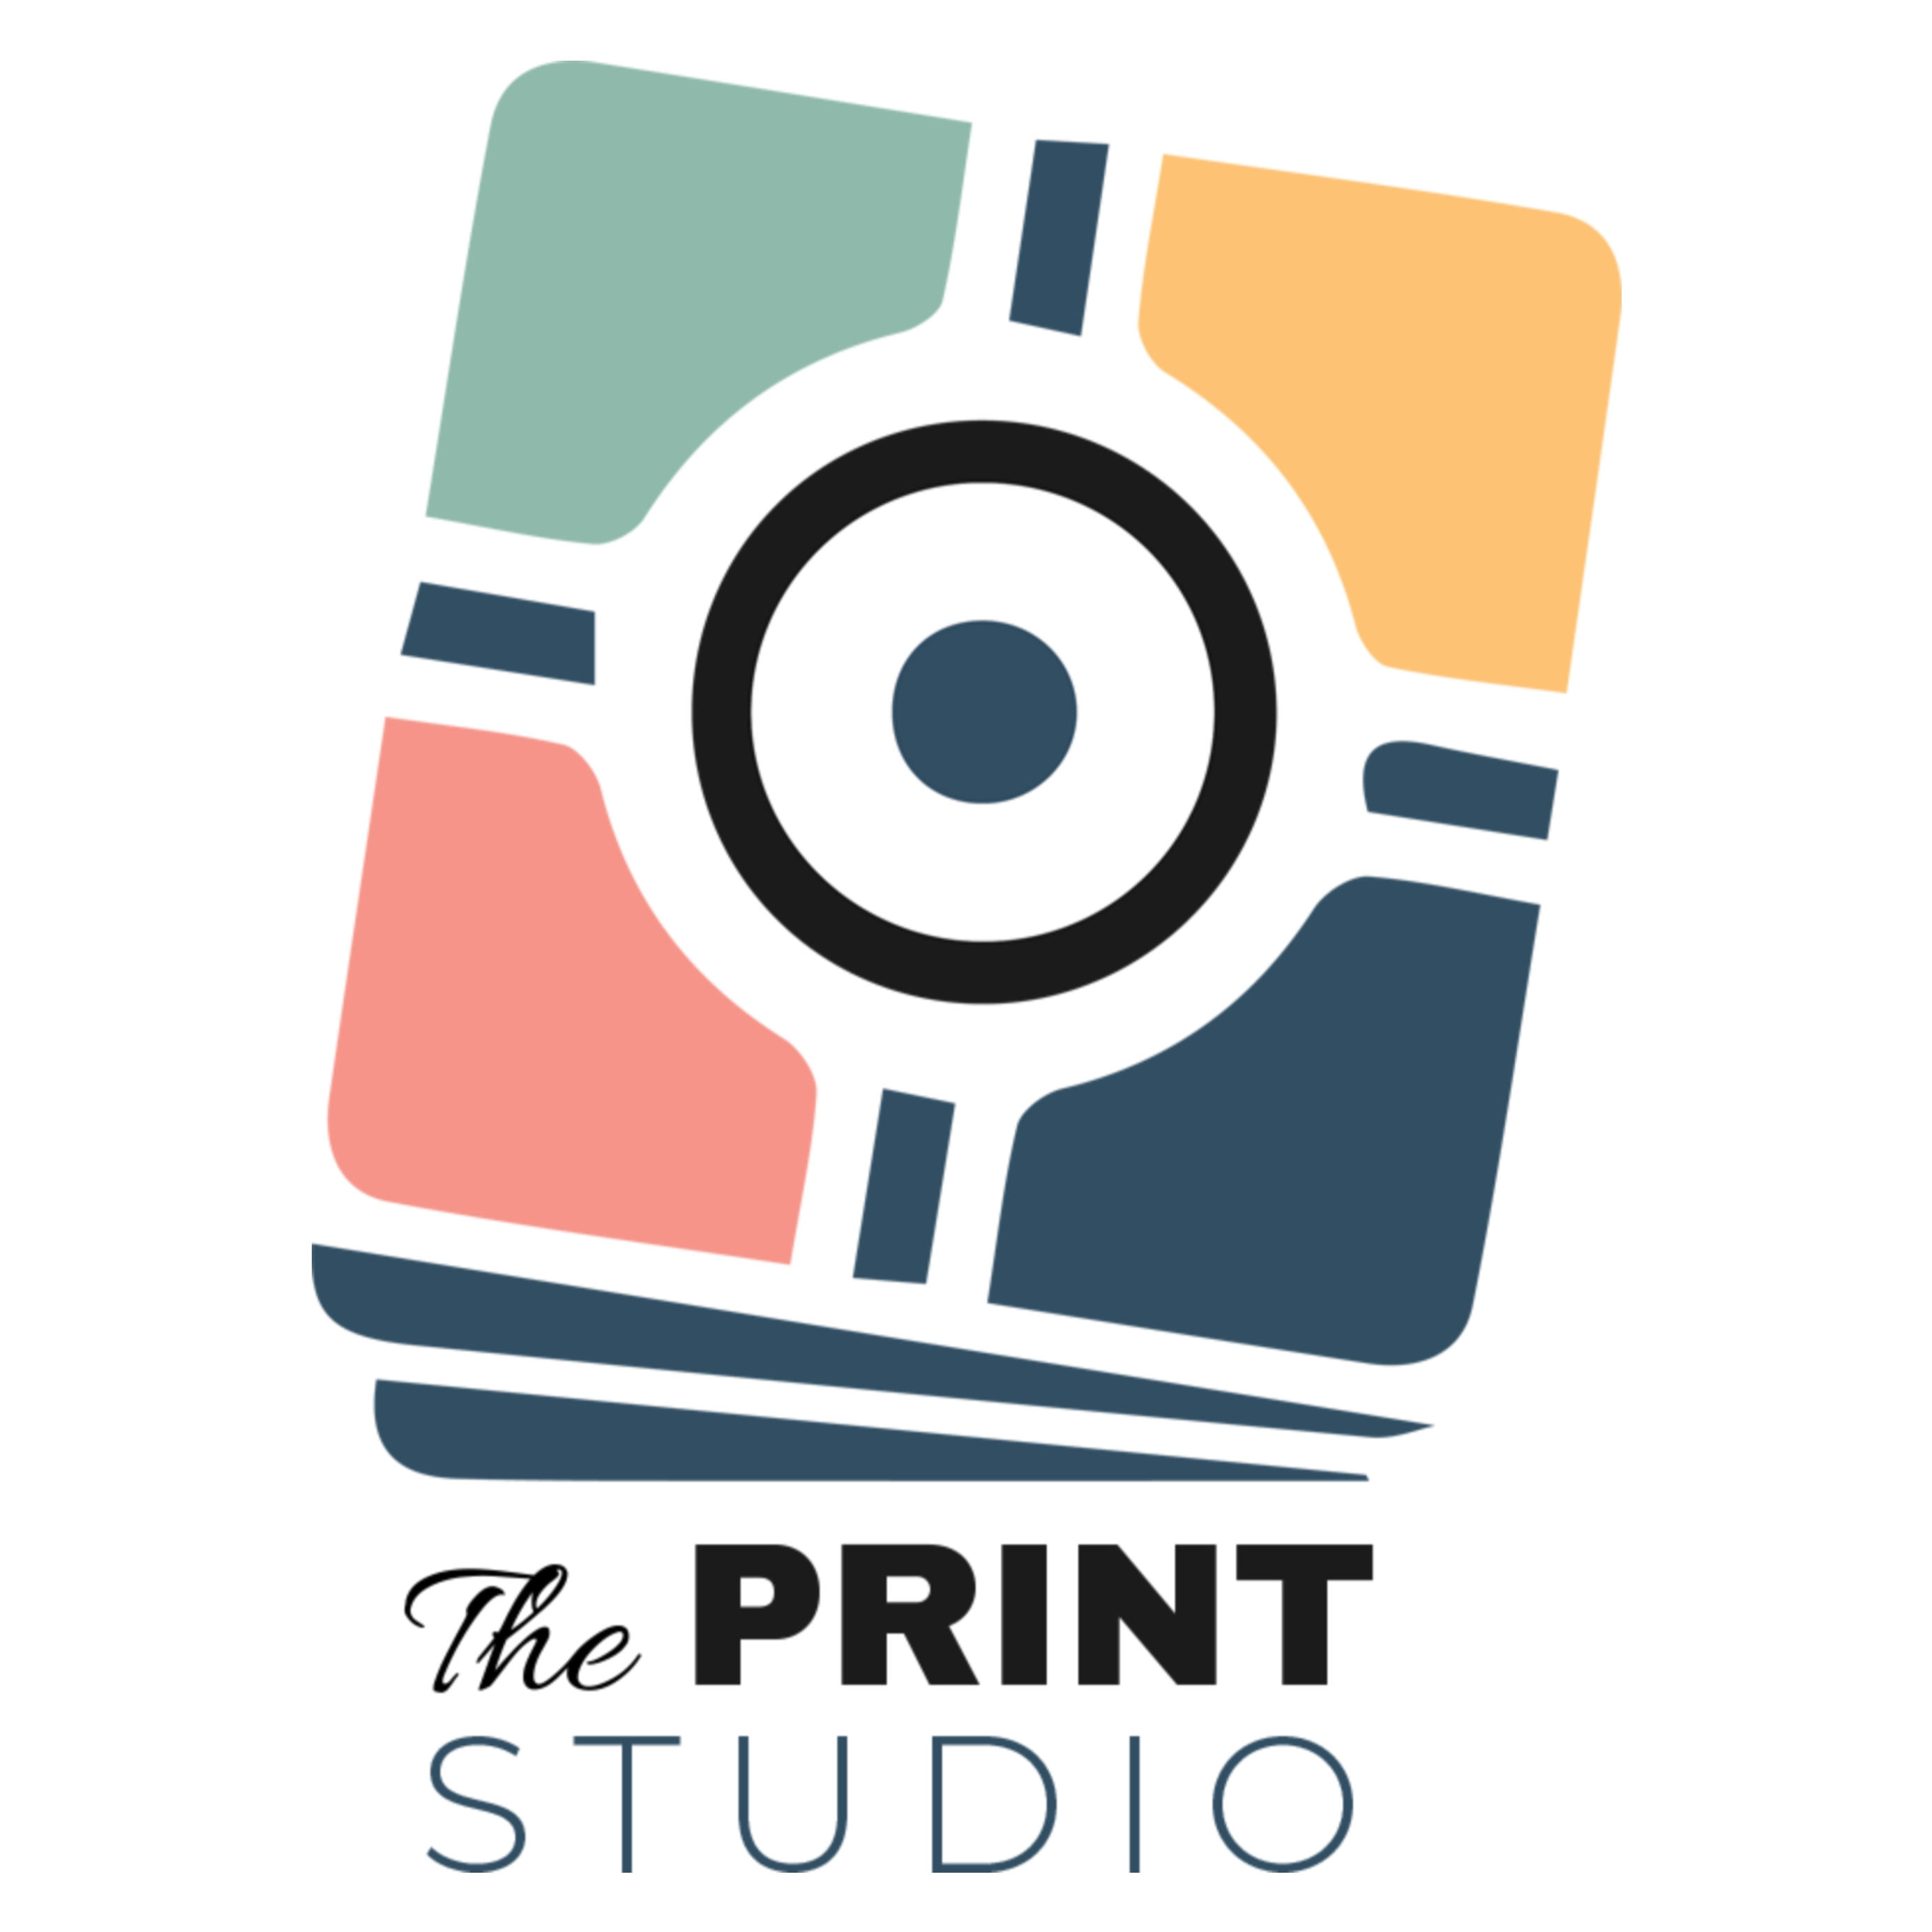 The Print Studio